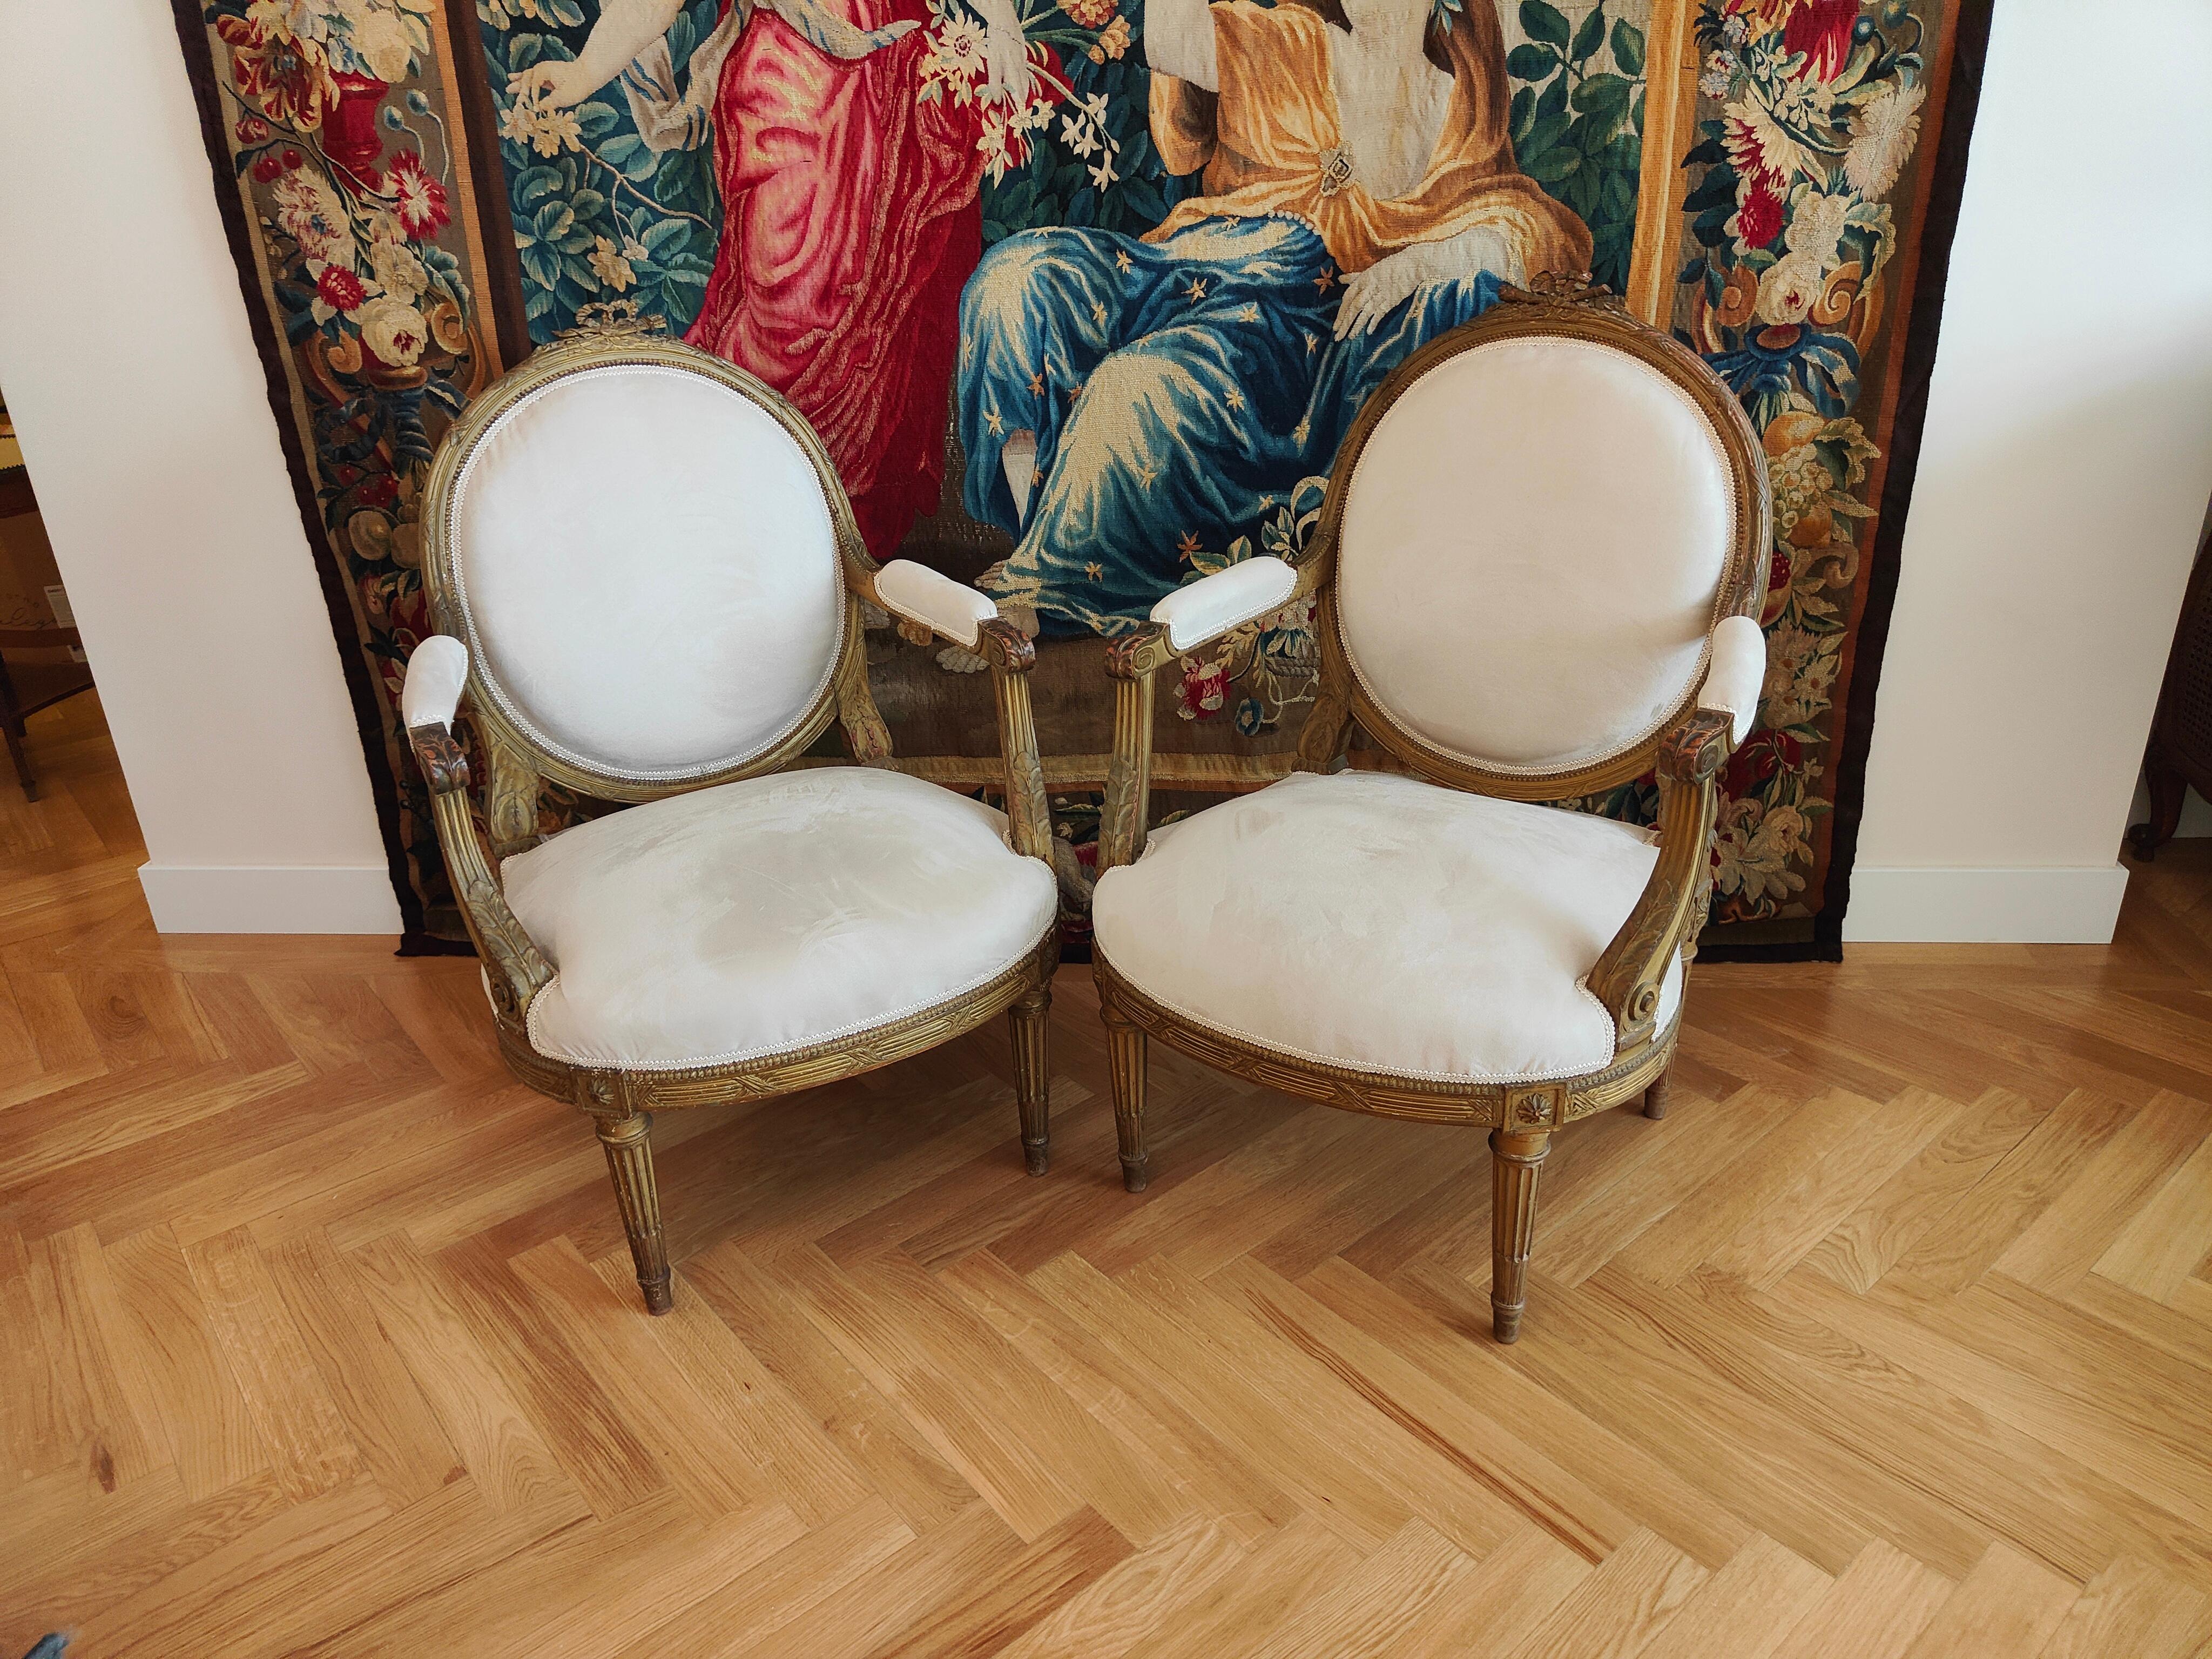 Paire de chaises françaises 18ème siècle
CHAISES ÉLÉGANTES DE LA FIN DU DIX-HUITIÈME SIÈCLE, FRANÇAISES, PLUS TARD TAPISSÉES DE TISSU BLANC. MESURES : 100X85X60